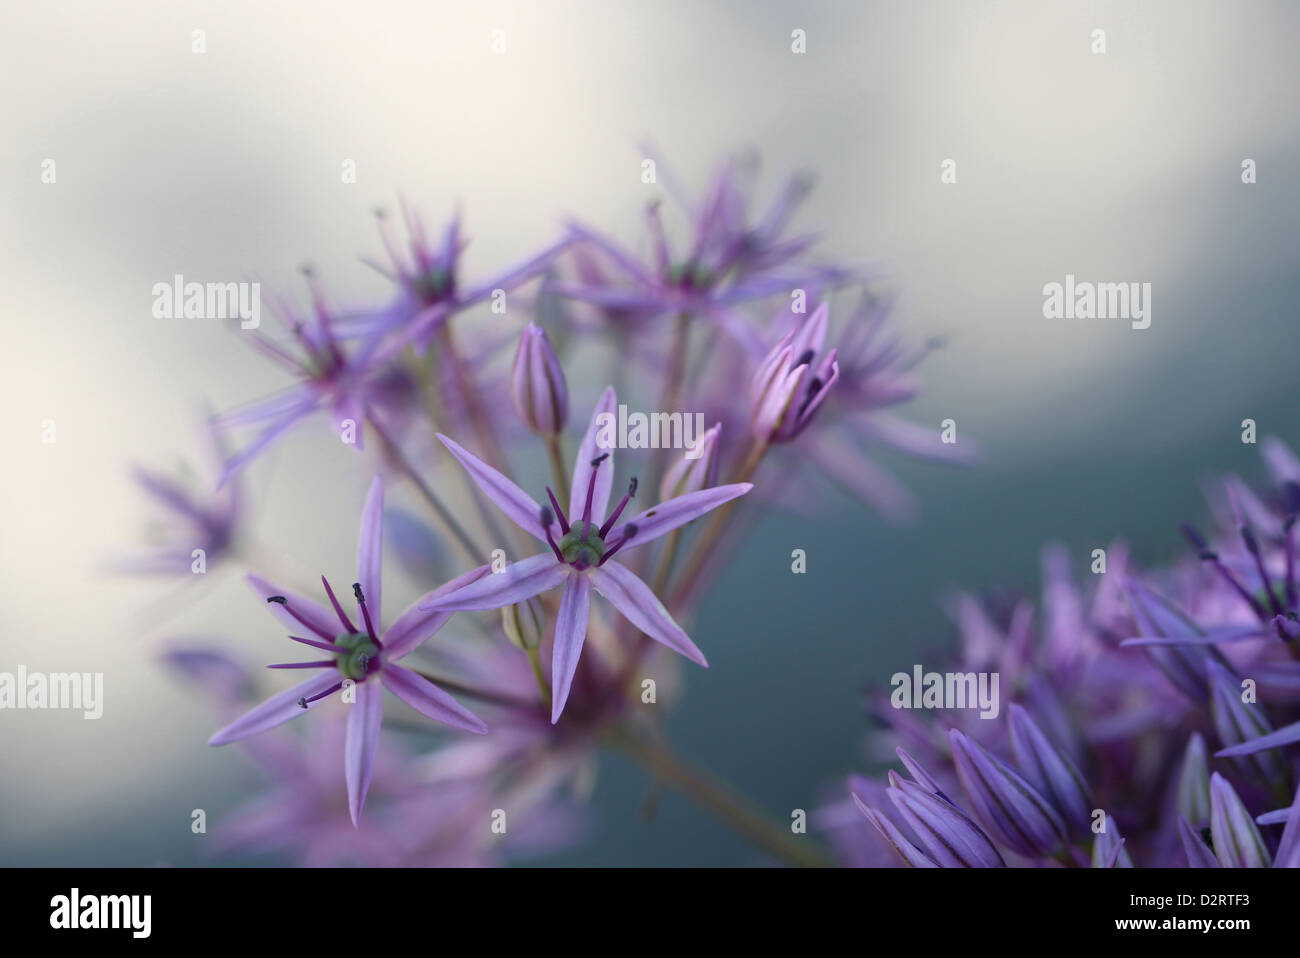 Allium cultivar, Allium, Purple subject. Stock Photo